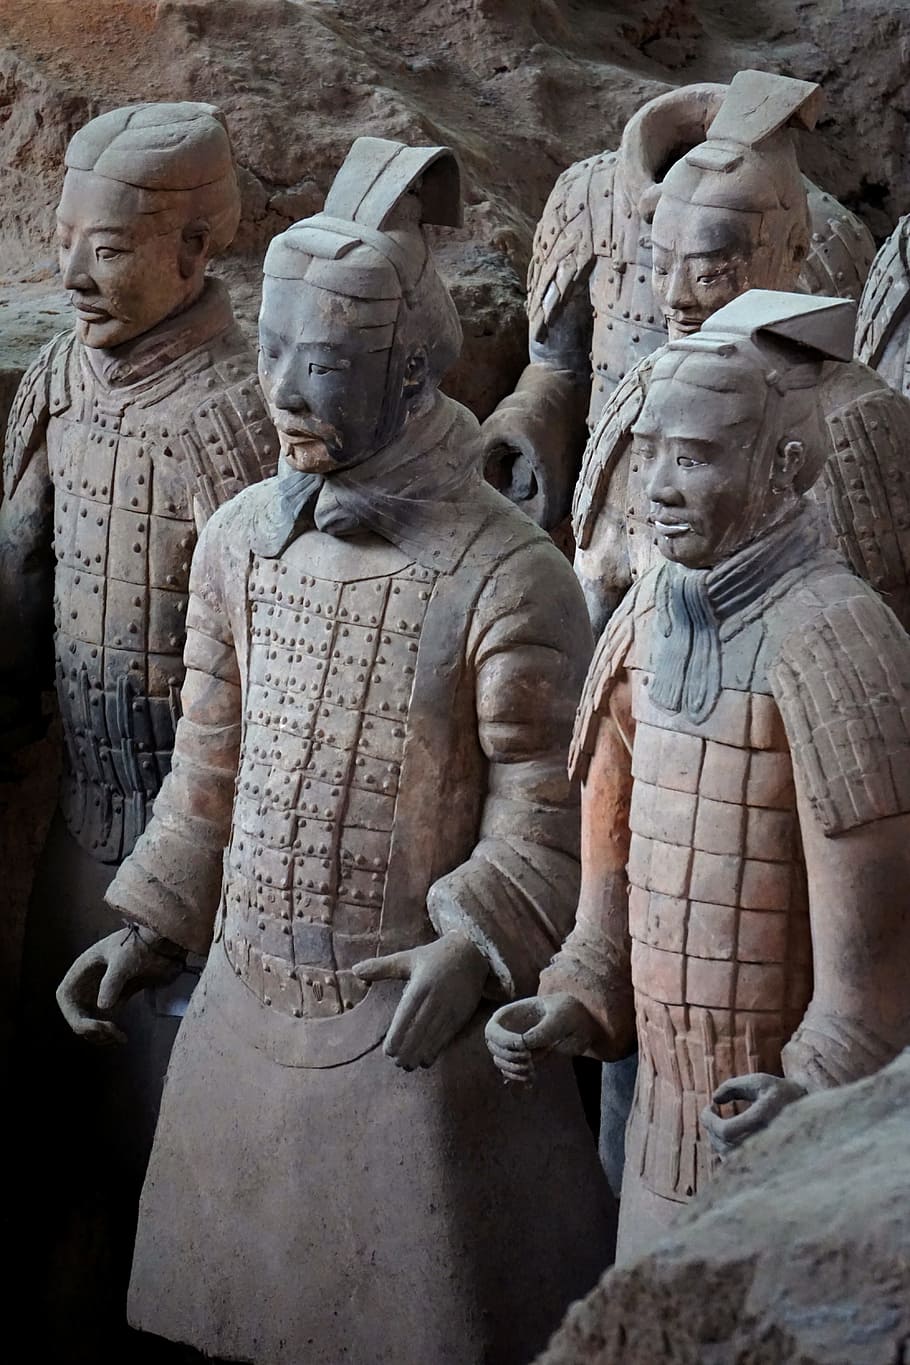 terracotta army, terracotta warriors, xi'an, china, sculpture, HD wallpaper